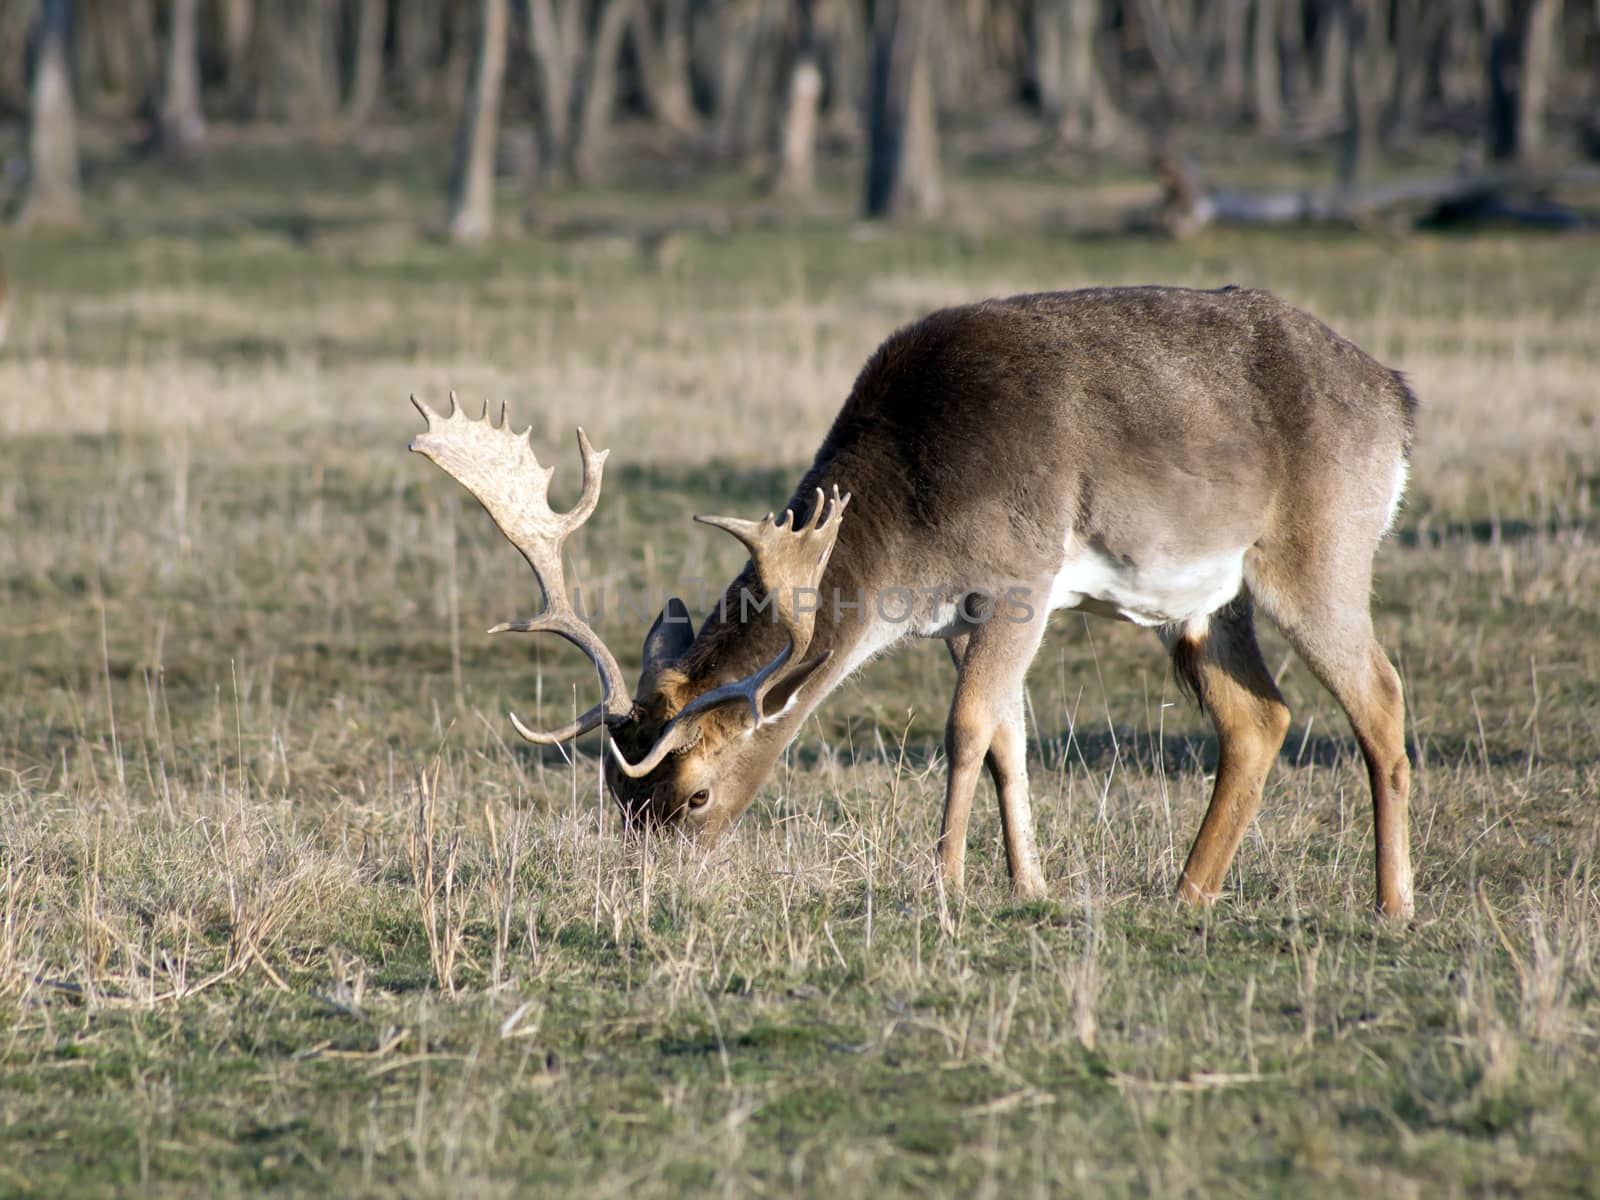 Fallow deer buck grazing in winter field.
